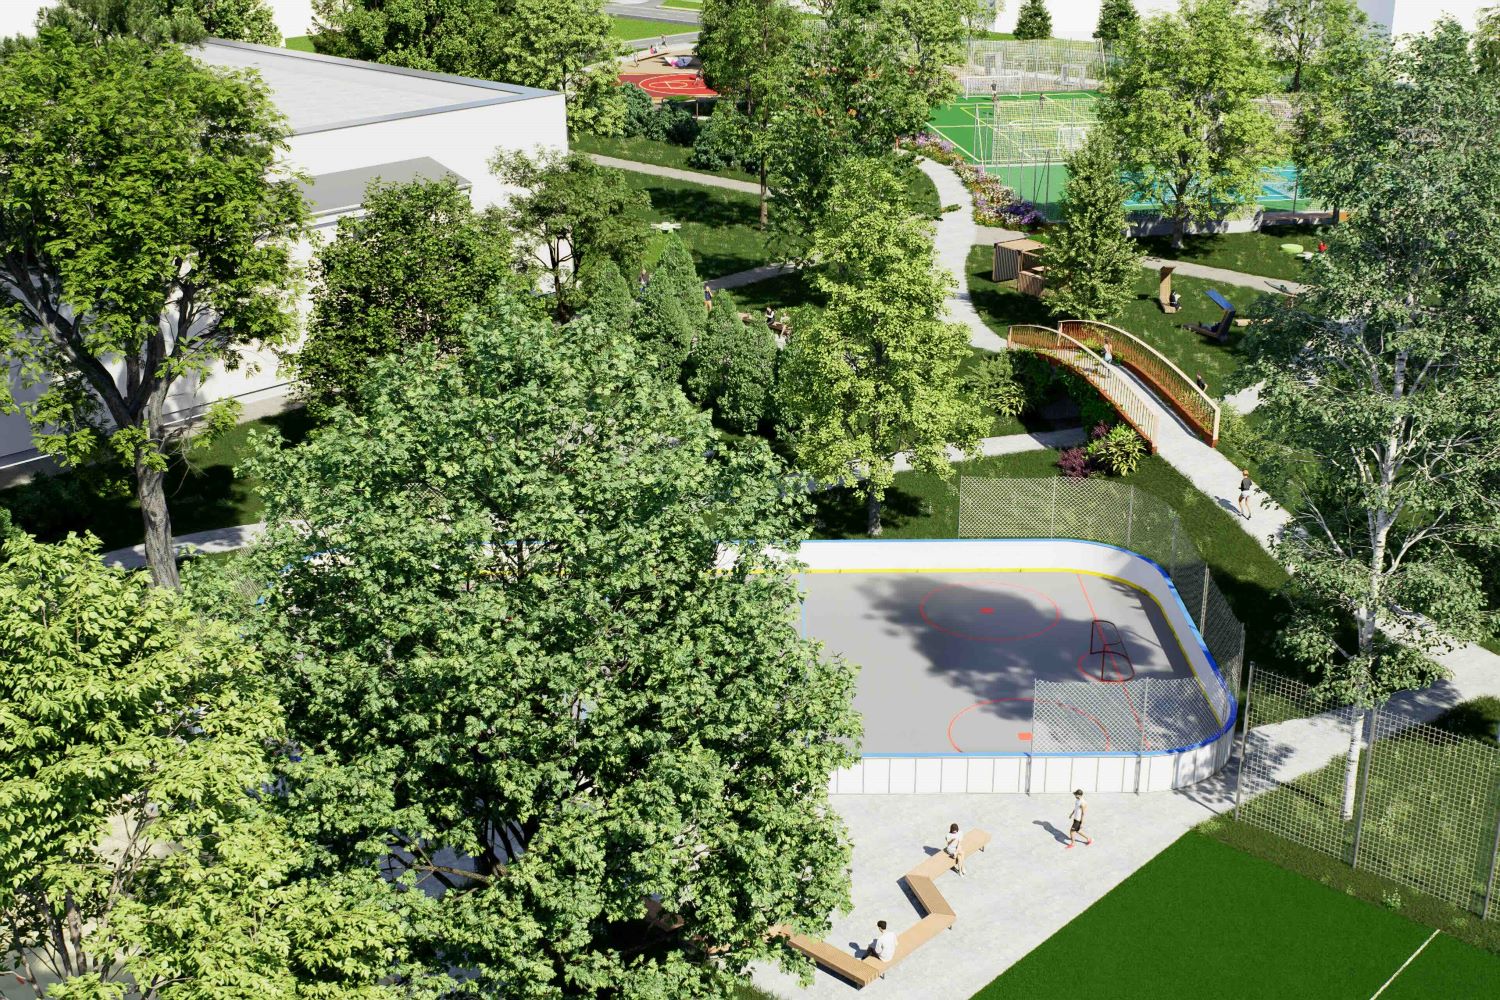 Návrh športového areálu STVU v Trnave - 11500 m2 má patriť zeleni.